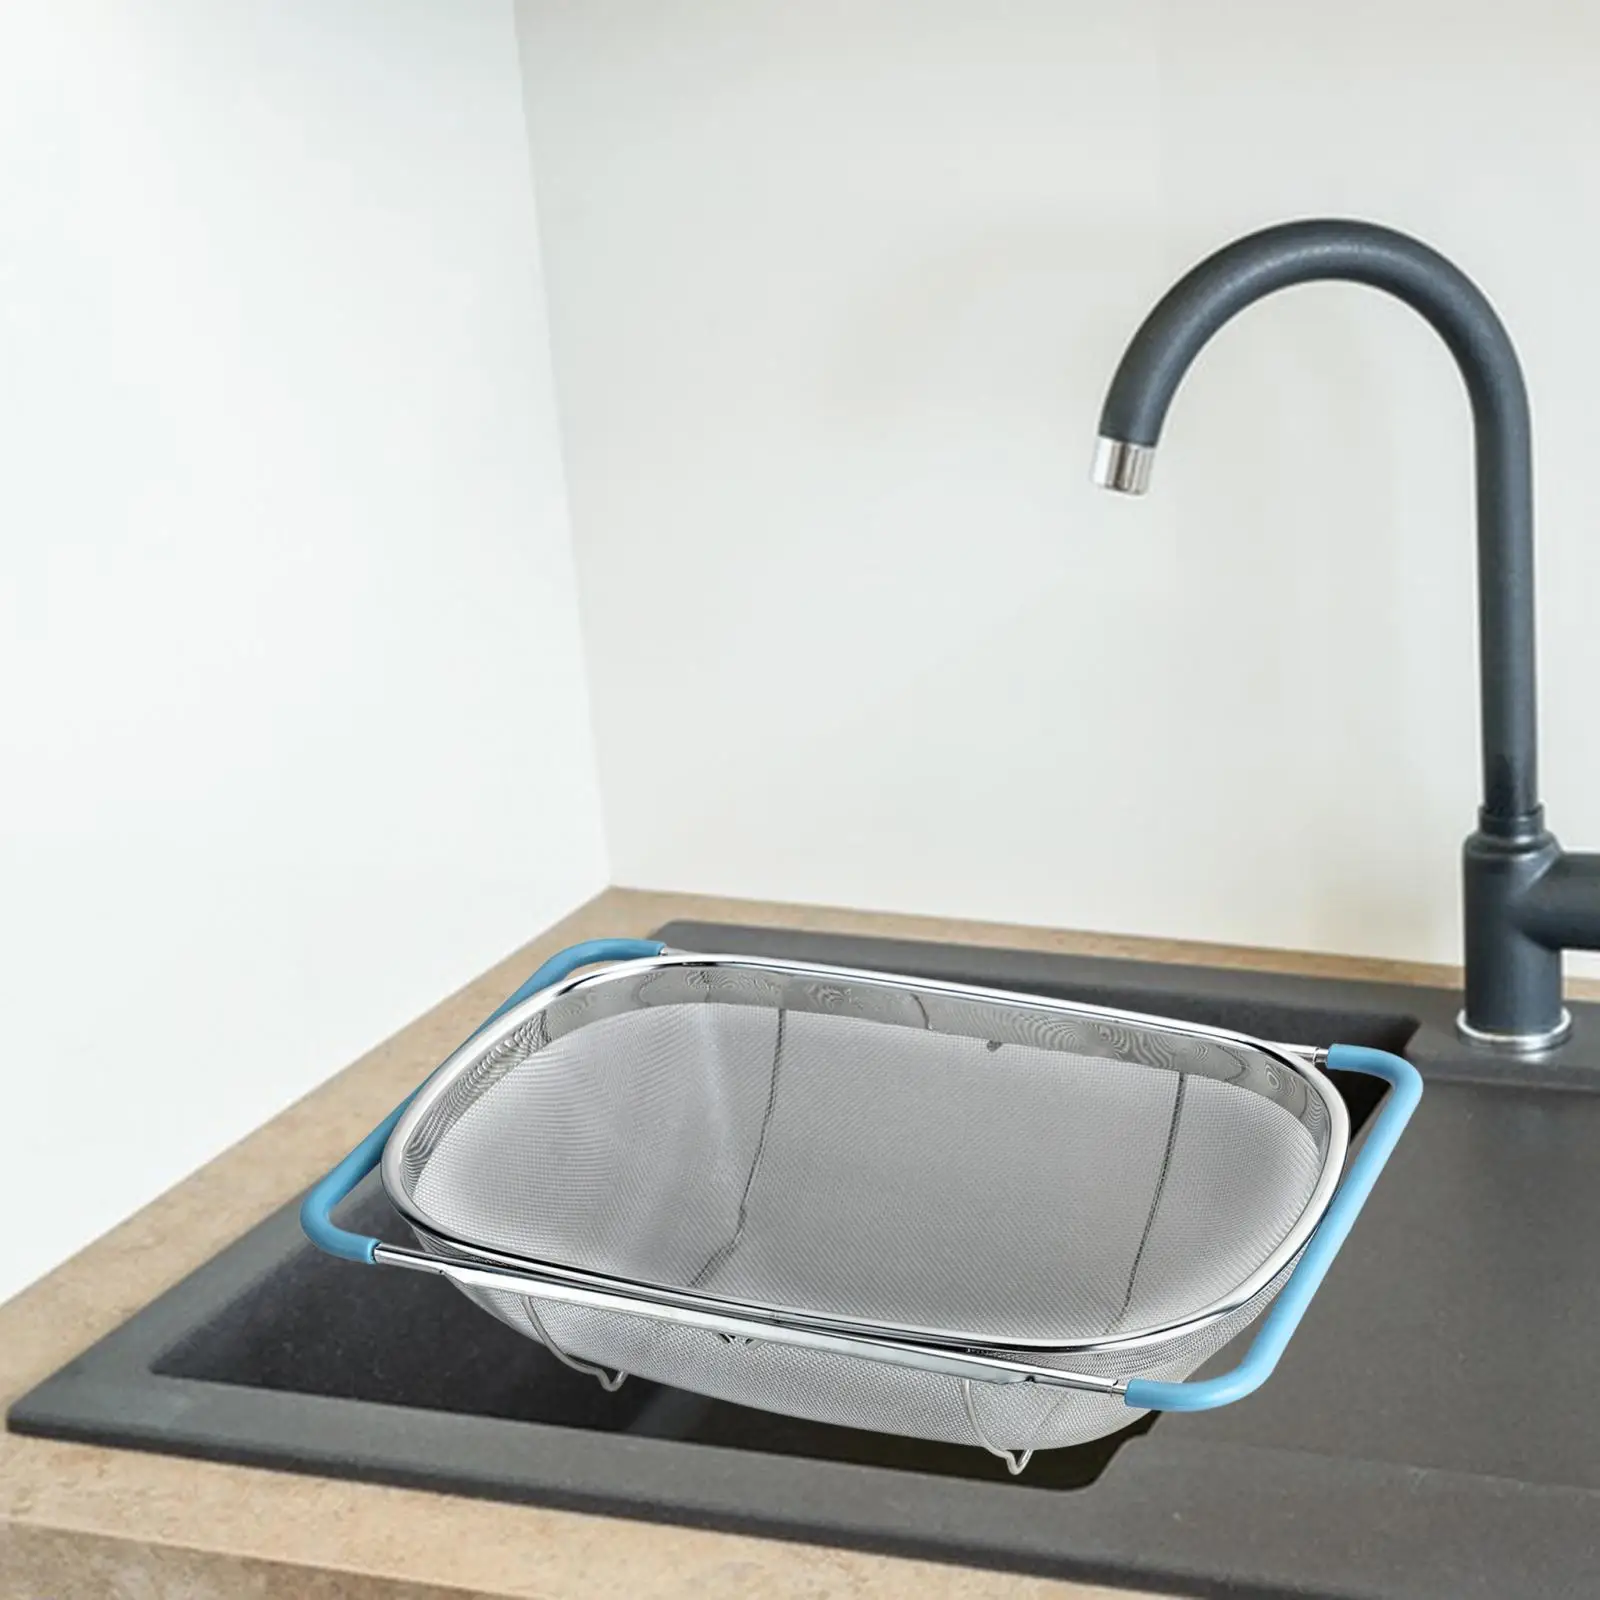 over Sink Colander Basket Extendable Expandable Sink Washing Basket Fruits Vegetables Drain Basket Home Kitchen Accessory